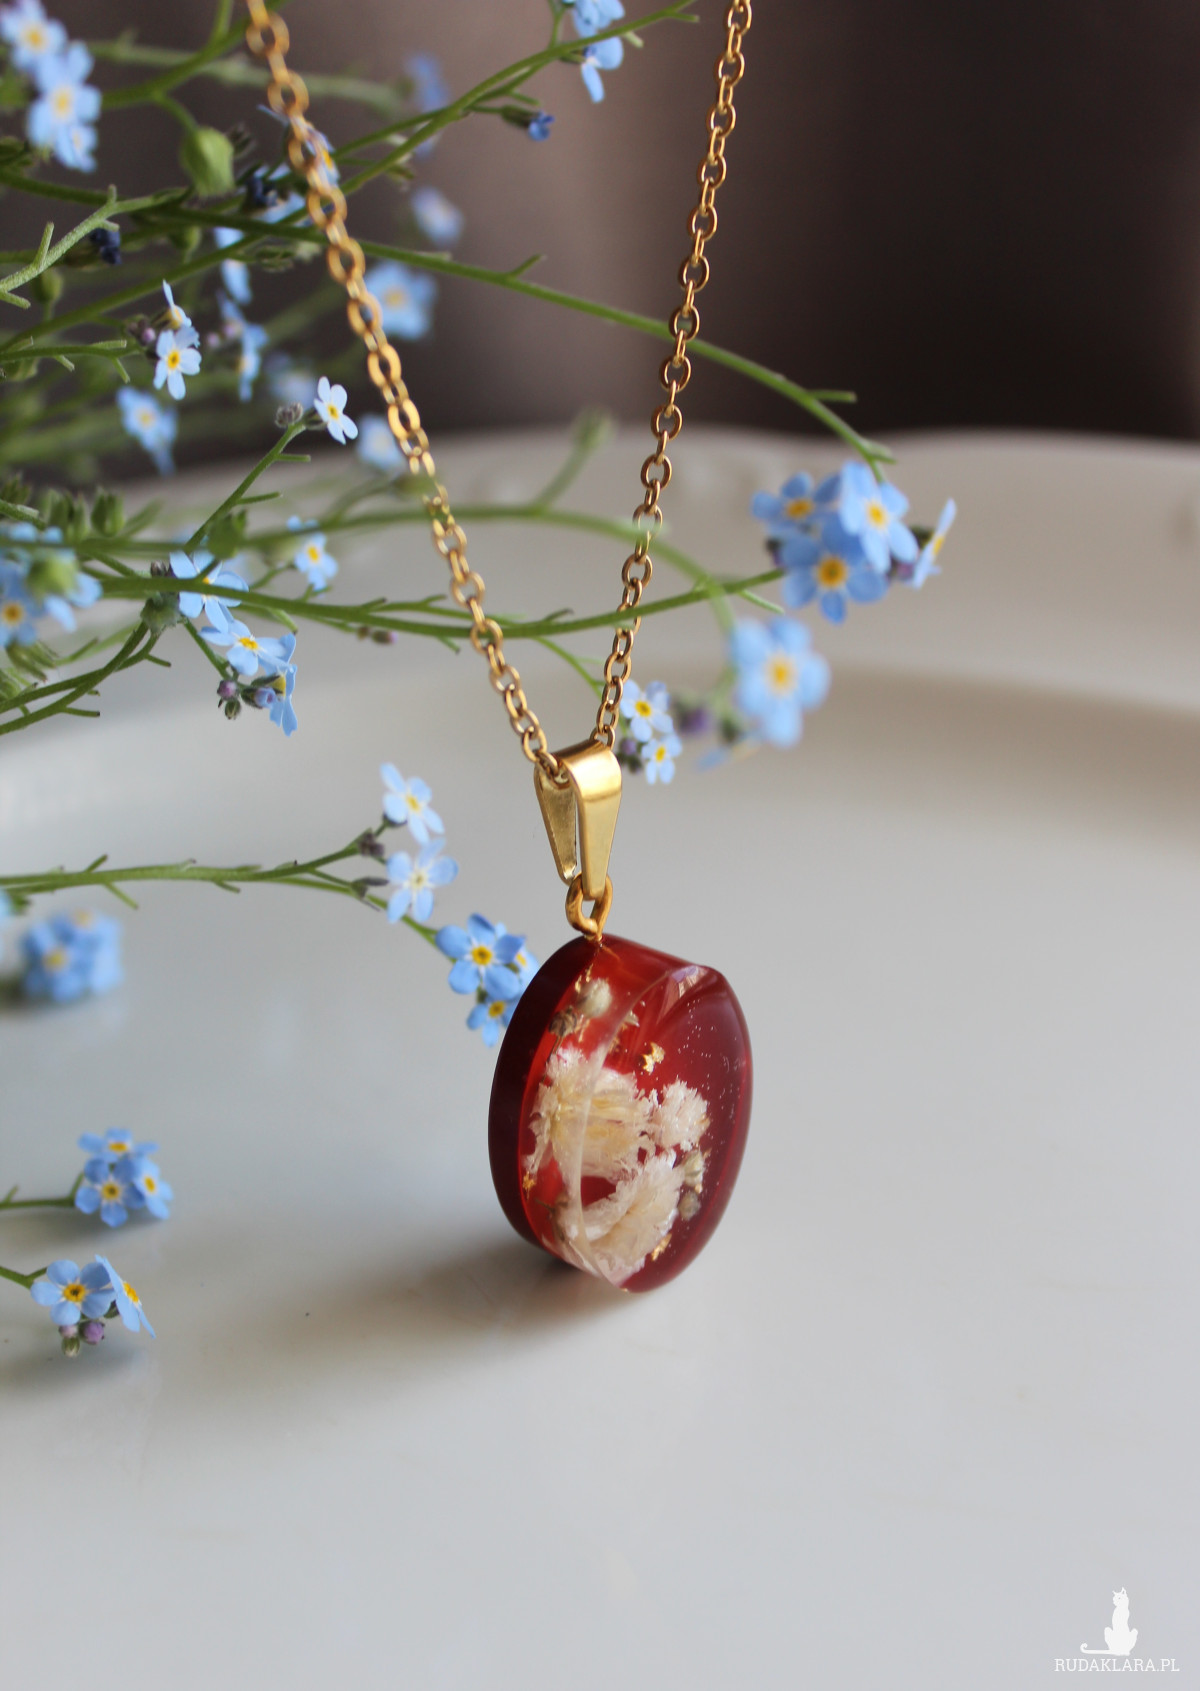 Złota jajowata zawieszka złoty wisiorek kwiat naszyjnik żywica z żywicy kwiaty z kwiatami bordowa czerwona